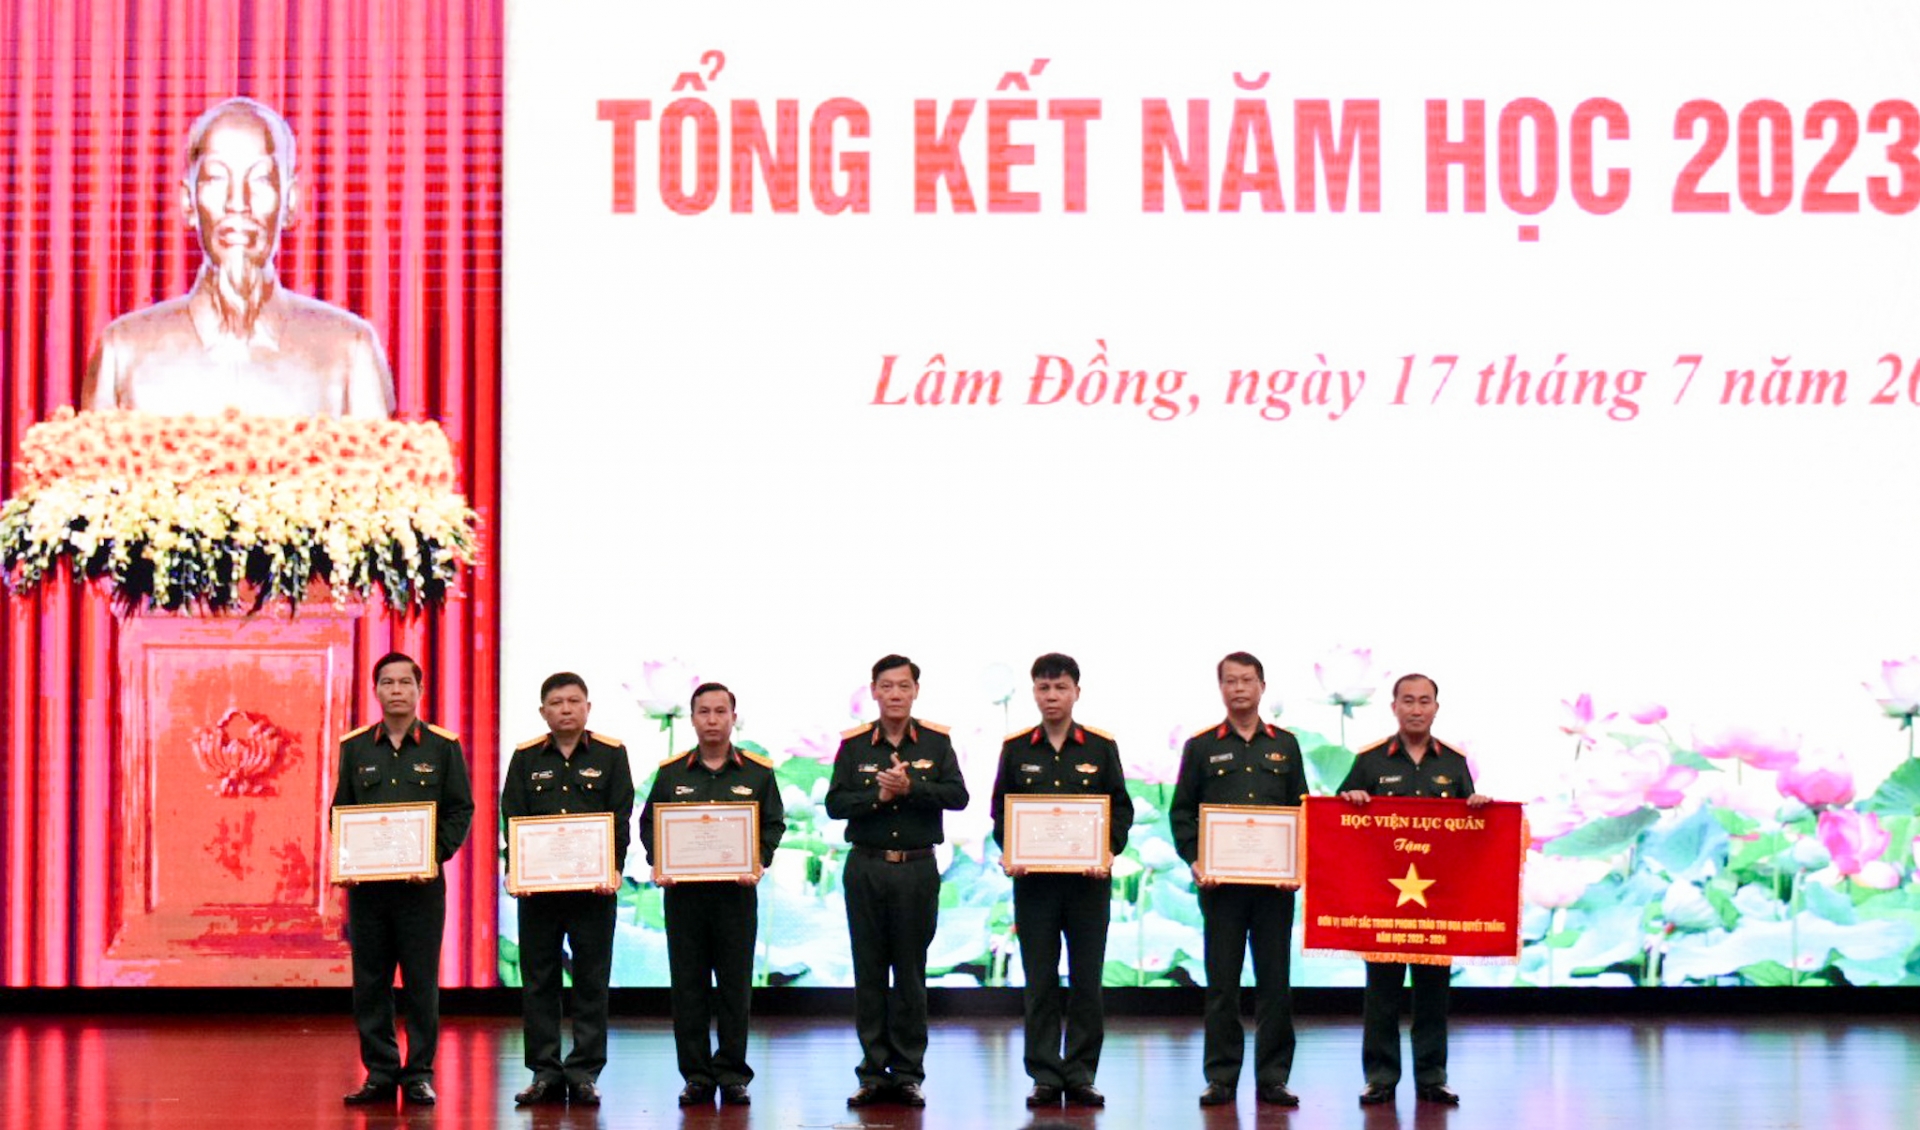  Thiếu tướng Đỗ Minh Xương, Giám đốc Học viện trao bằng khen và của Bộ trưởng Bộ Quốc phòng cho các tập thể có thành tích 